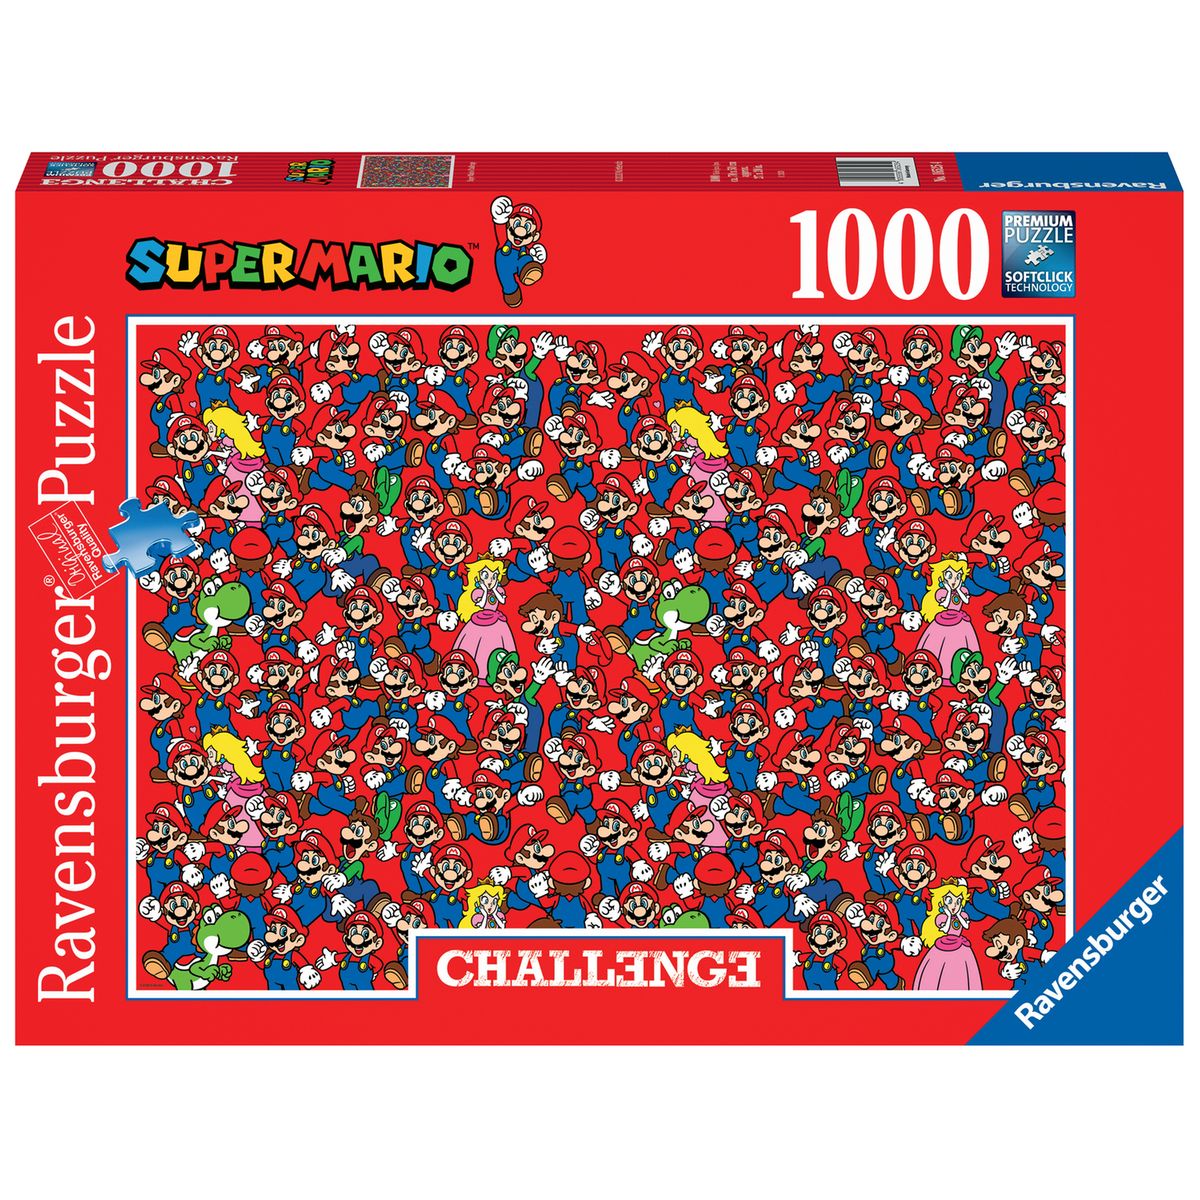 Grand paon de 250 pièces pour enfants et adultes Puzzle, Puzzle